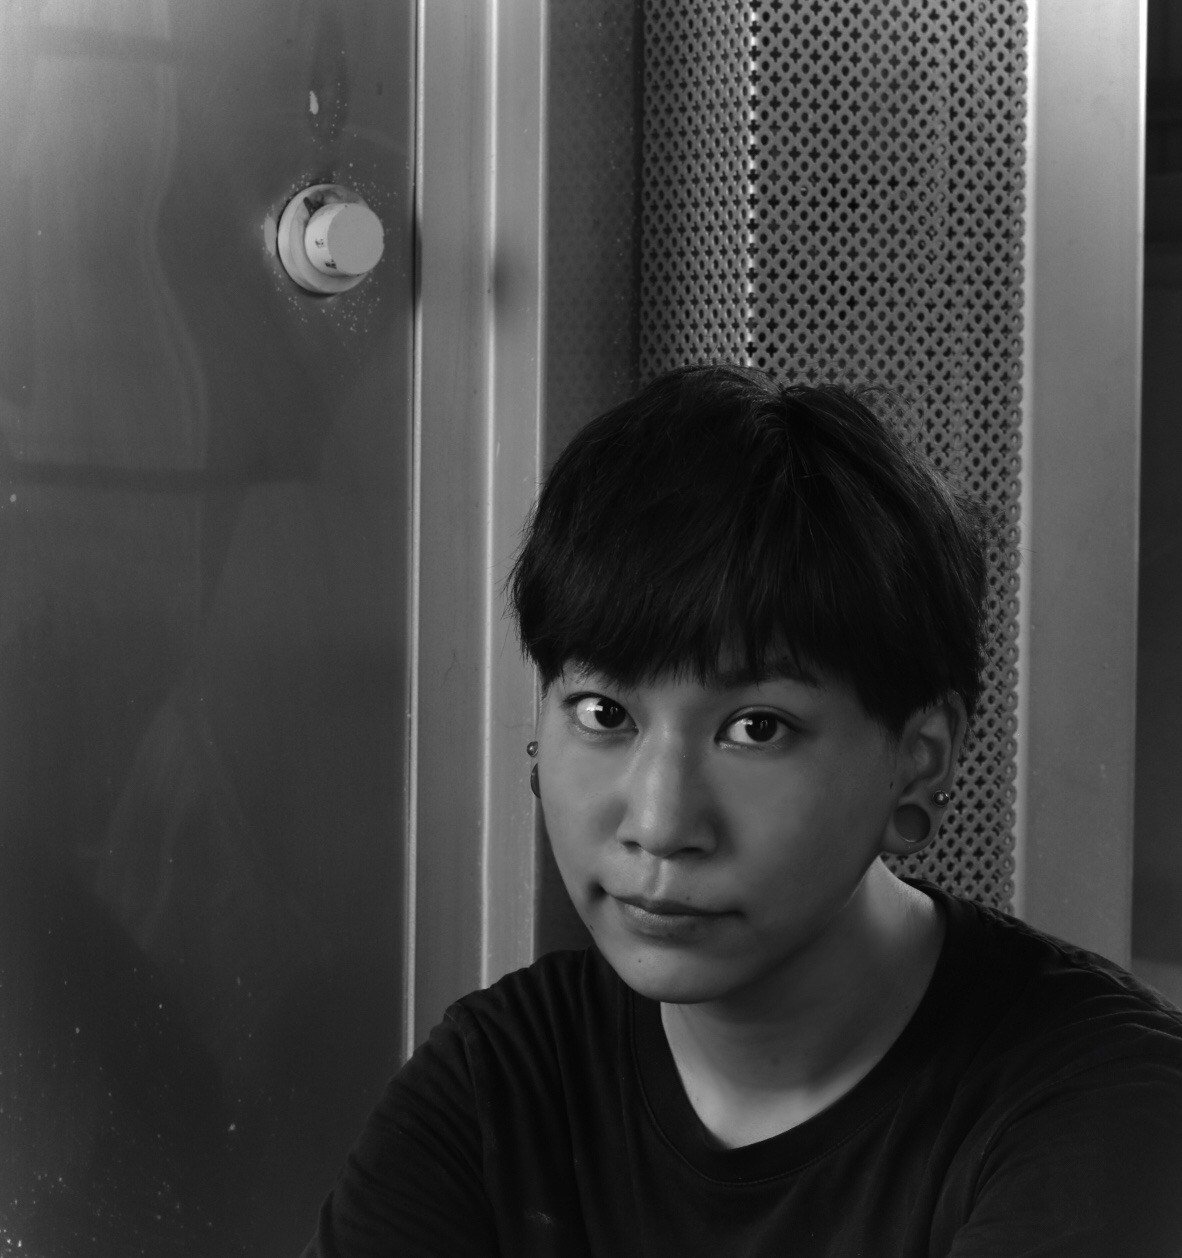  aizawa profile.JPG